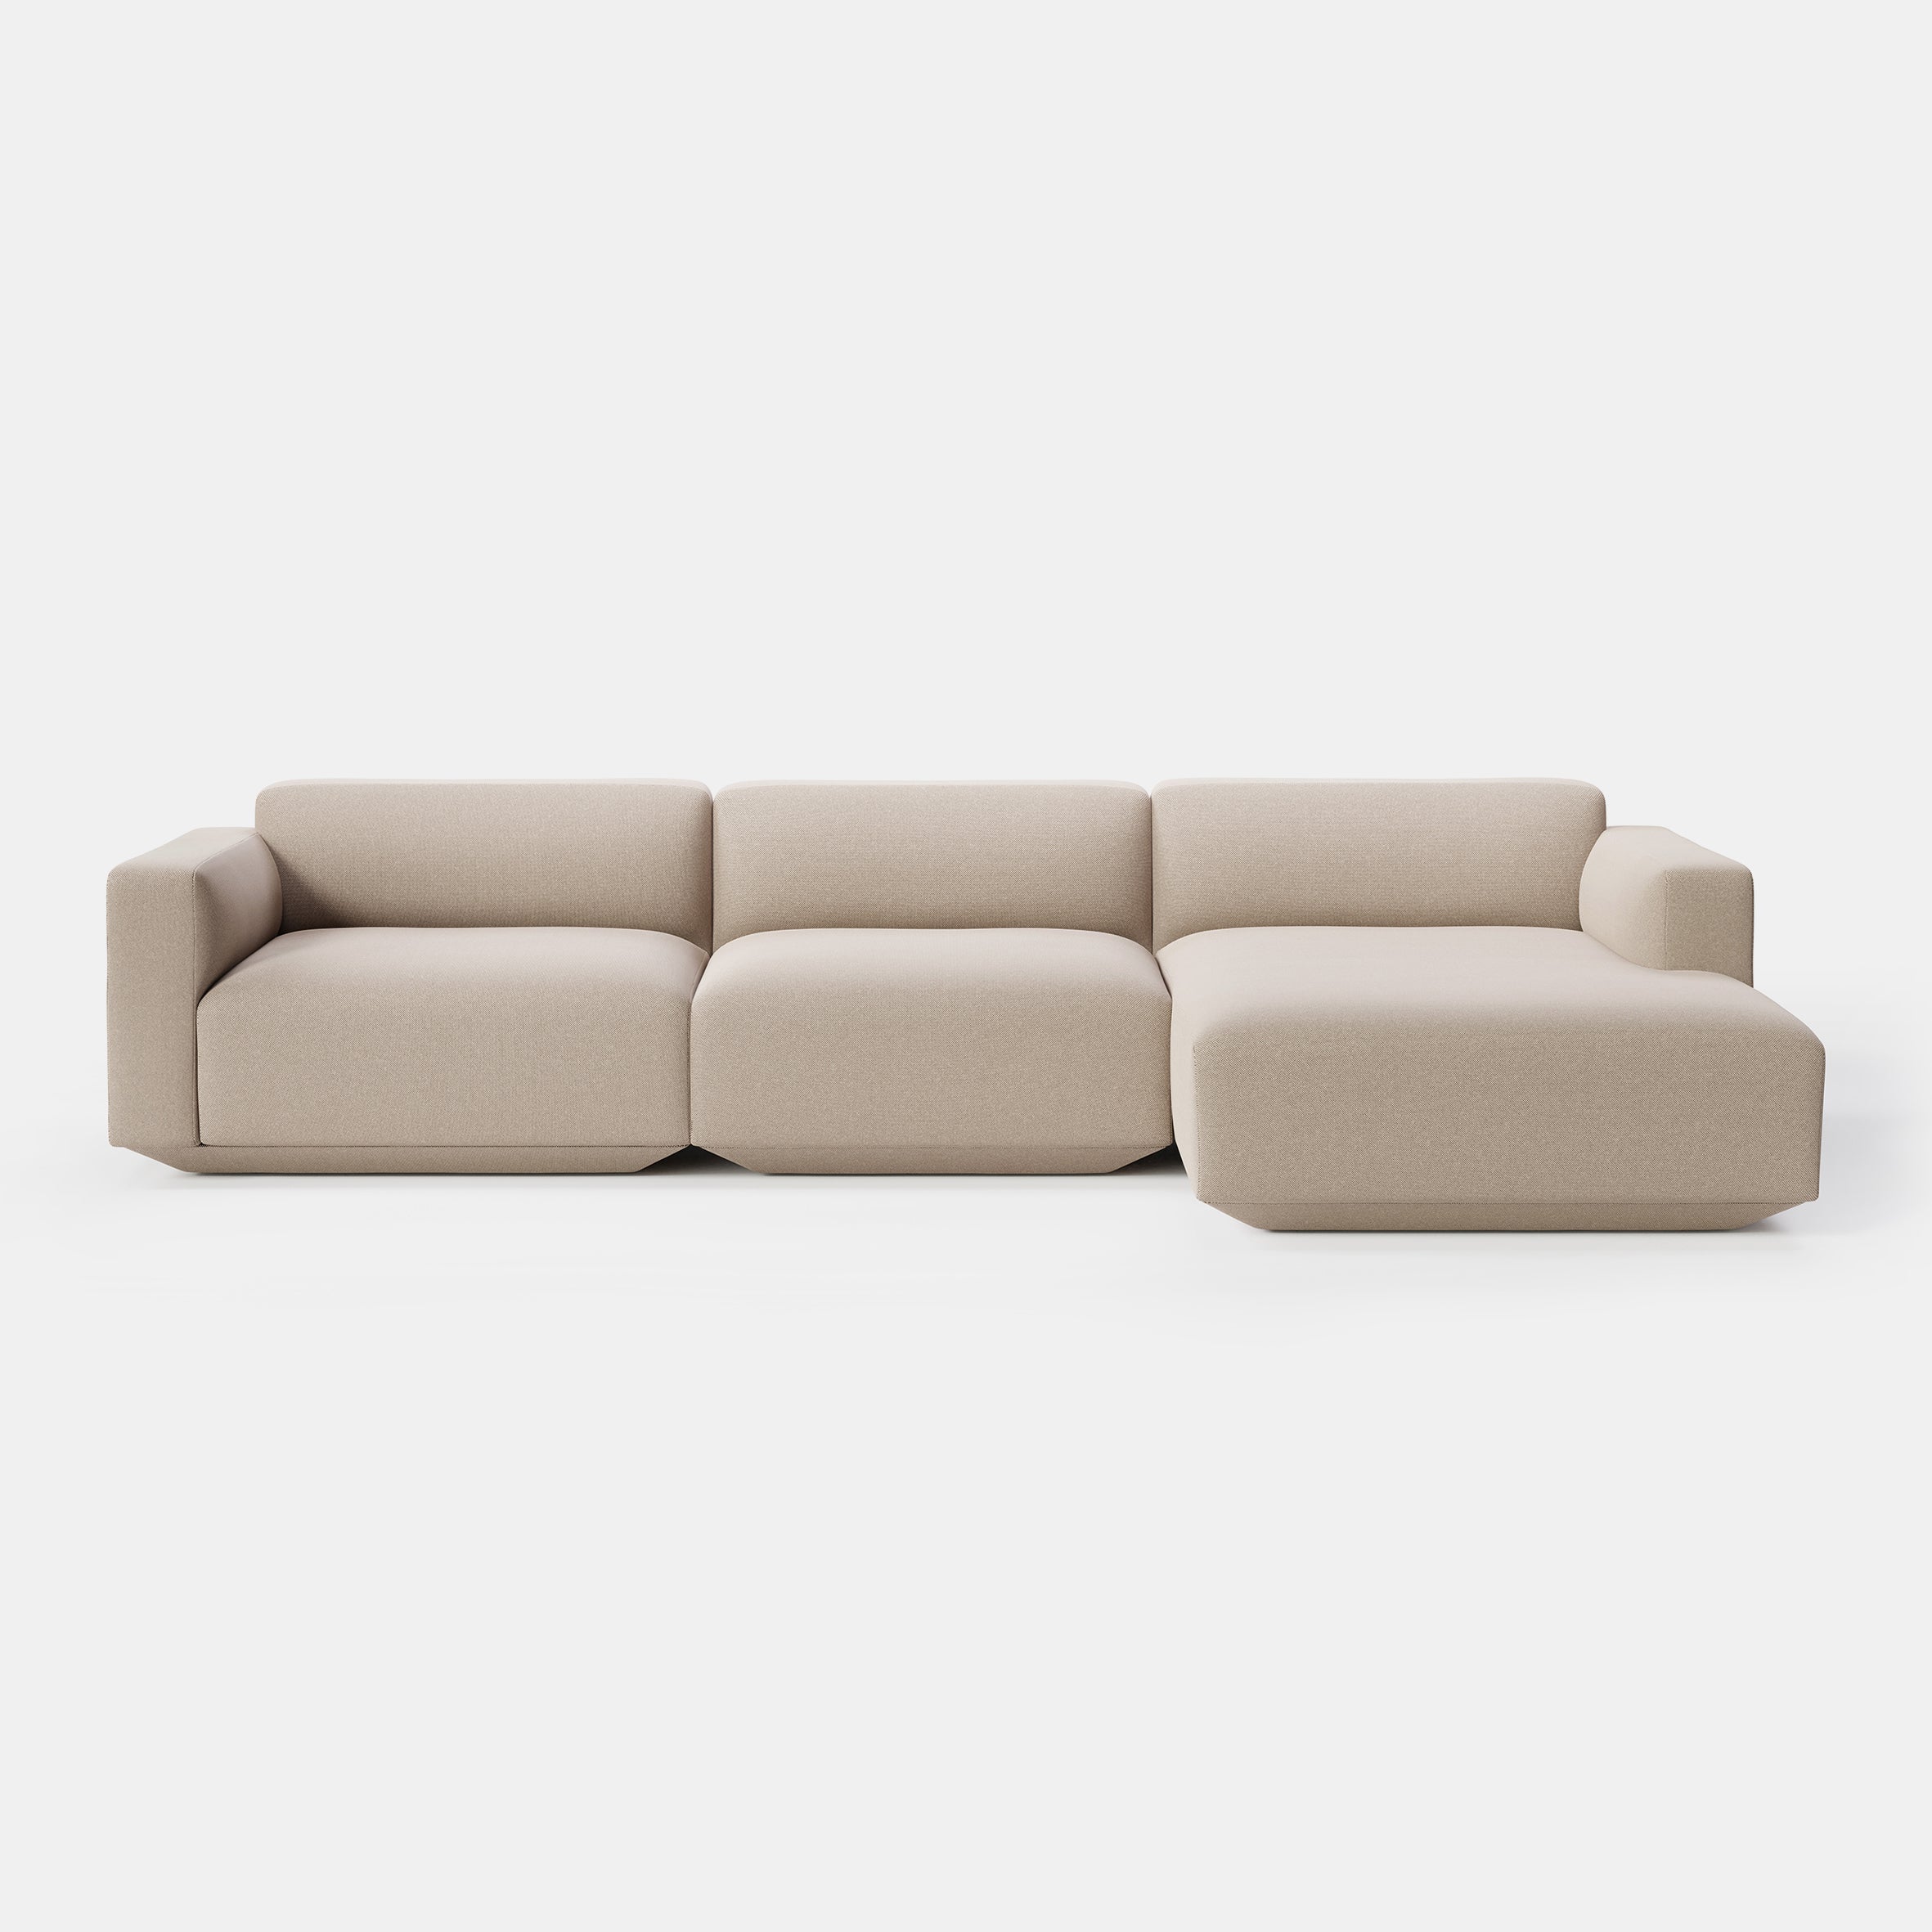 Develius Modular Sofa - 3 Seater